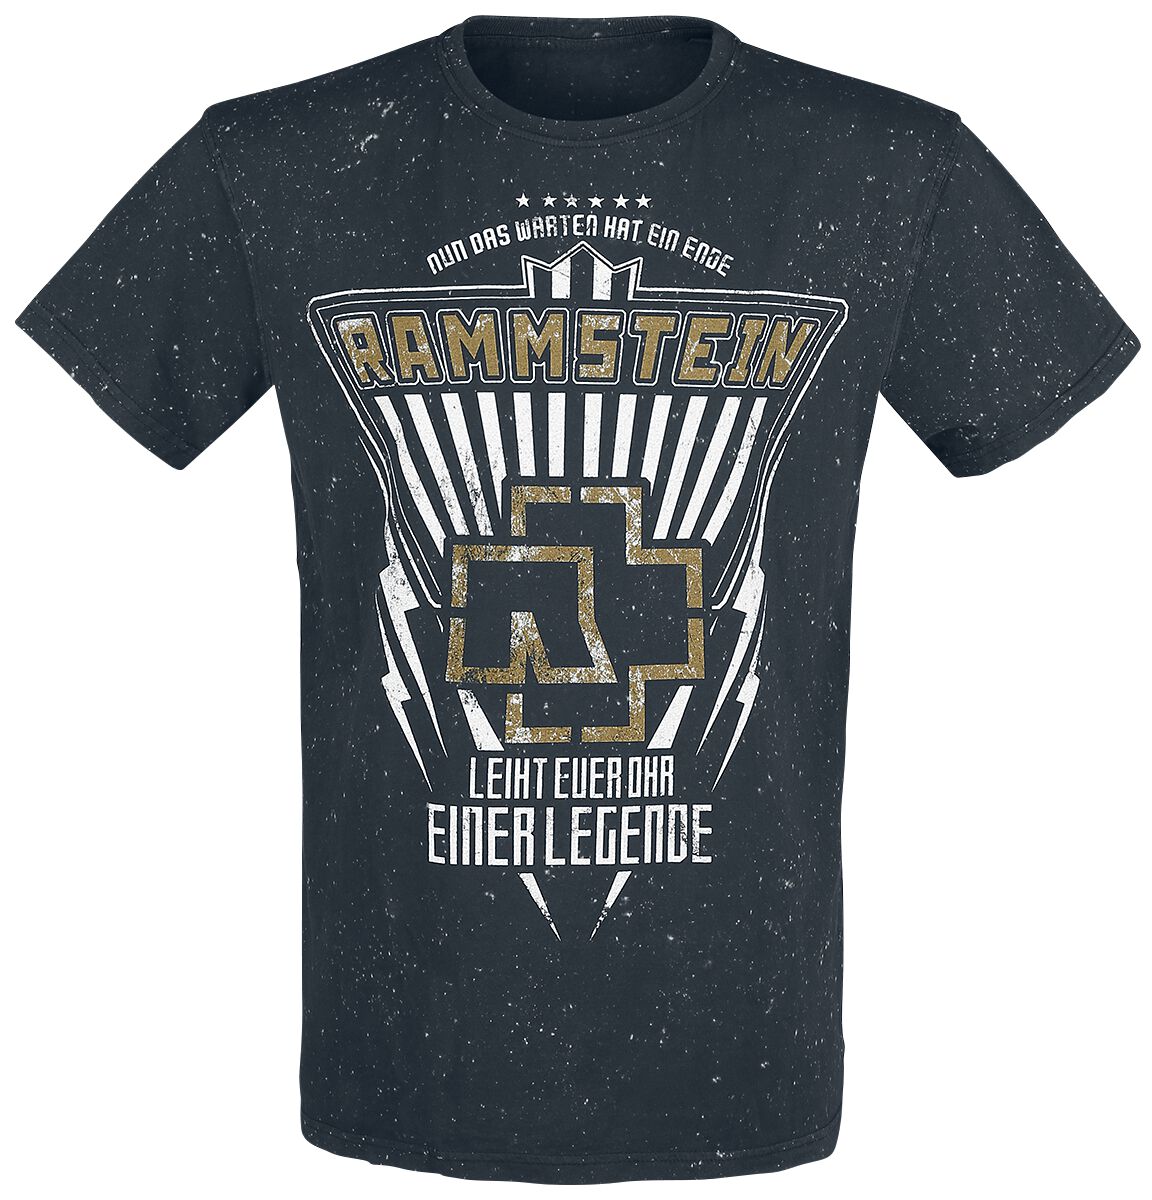 Rammstein T-Shirt - Legende - S bis 4XL - für Männer - Größe XXL - schwarz  - Lizenziertes Merchandise!